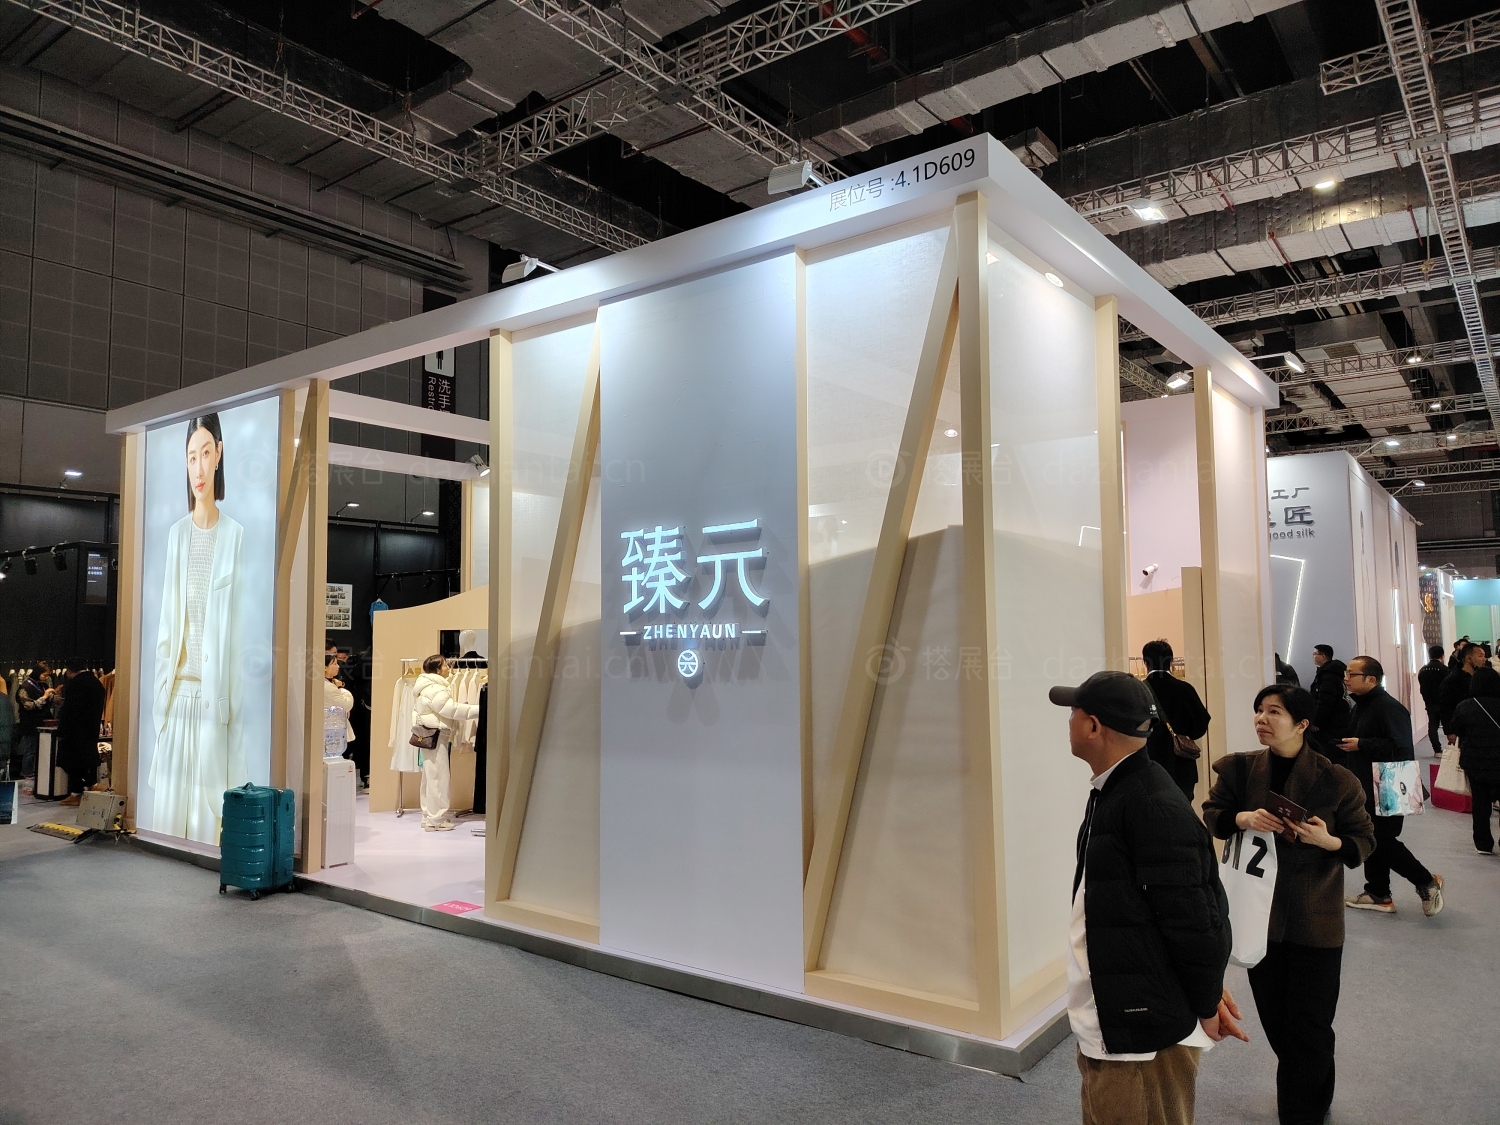 中国国际服装服饰博览会